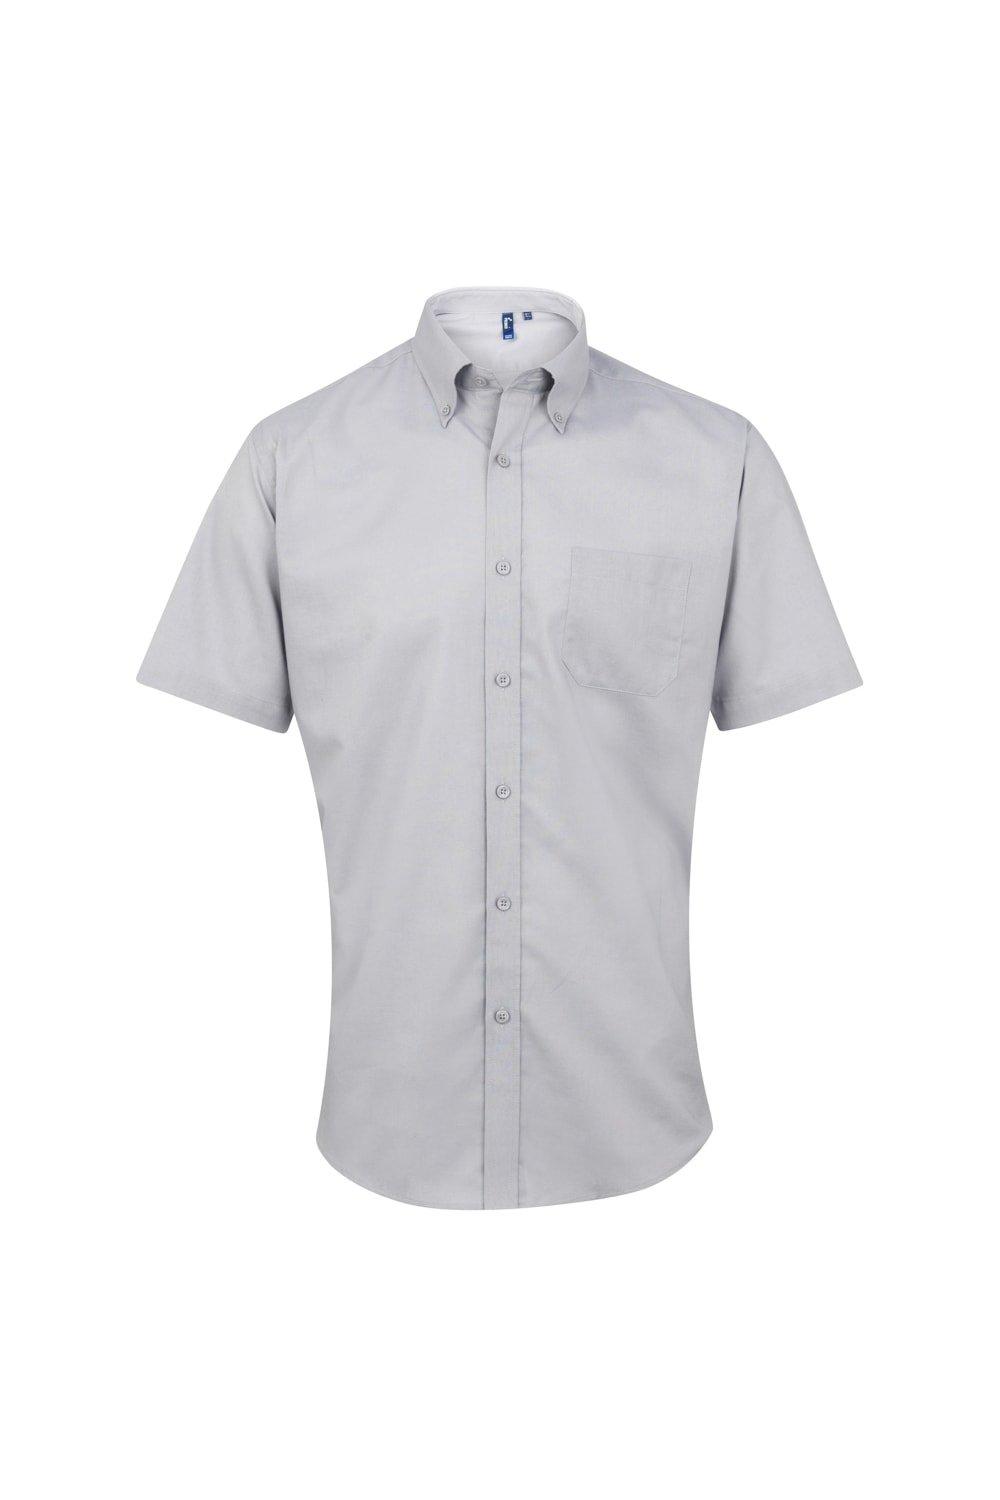 цена Оксфордская рабочая рубашка с короткими рукавами Signature Premier, серебро